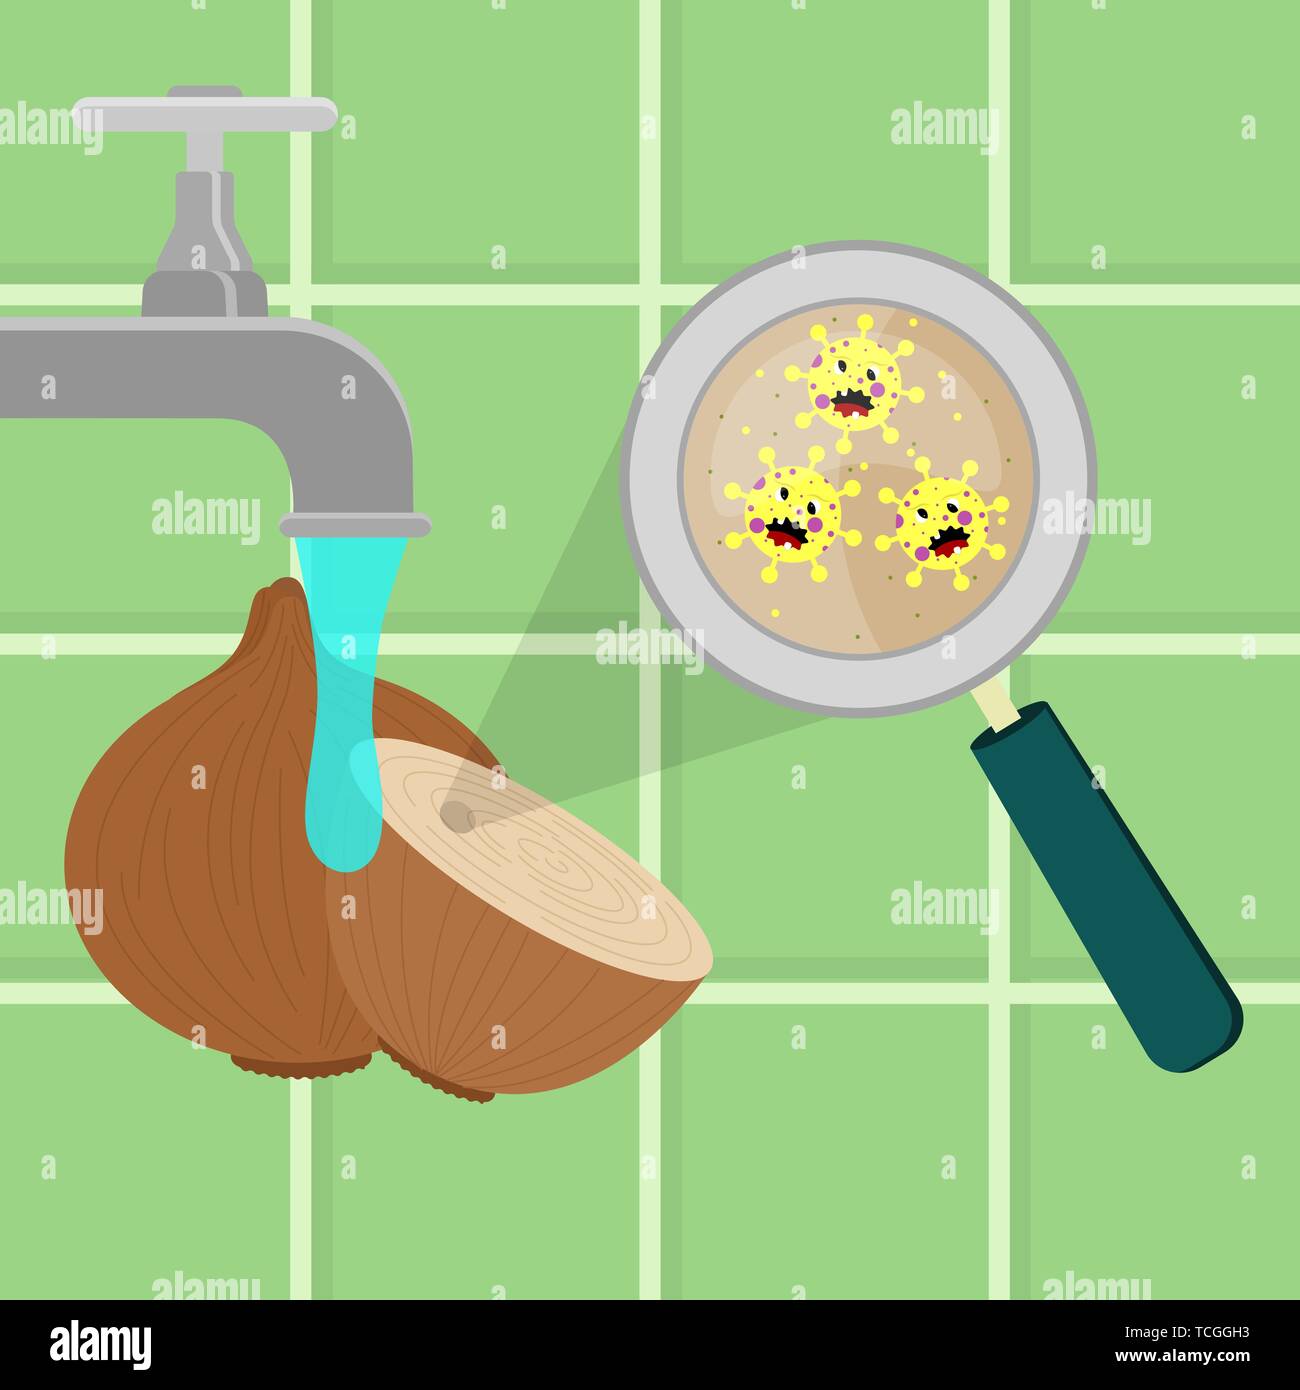 Cebolla contaminados con microbios de dibujos animados que se limpian y se lavan en una cocina. Los microorganismos, bacterias y virus en el vegetal amplía en un magn Ilustración del Vector